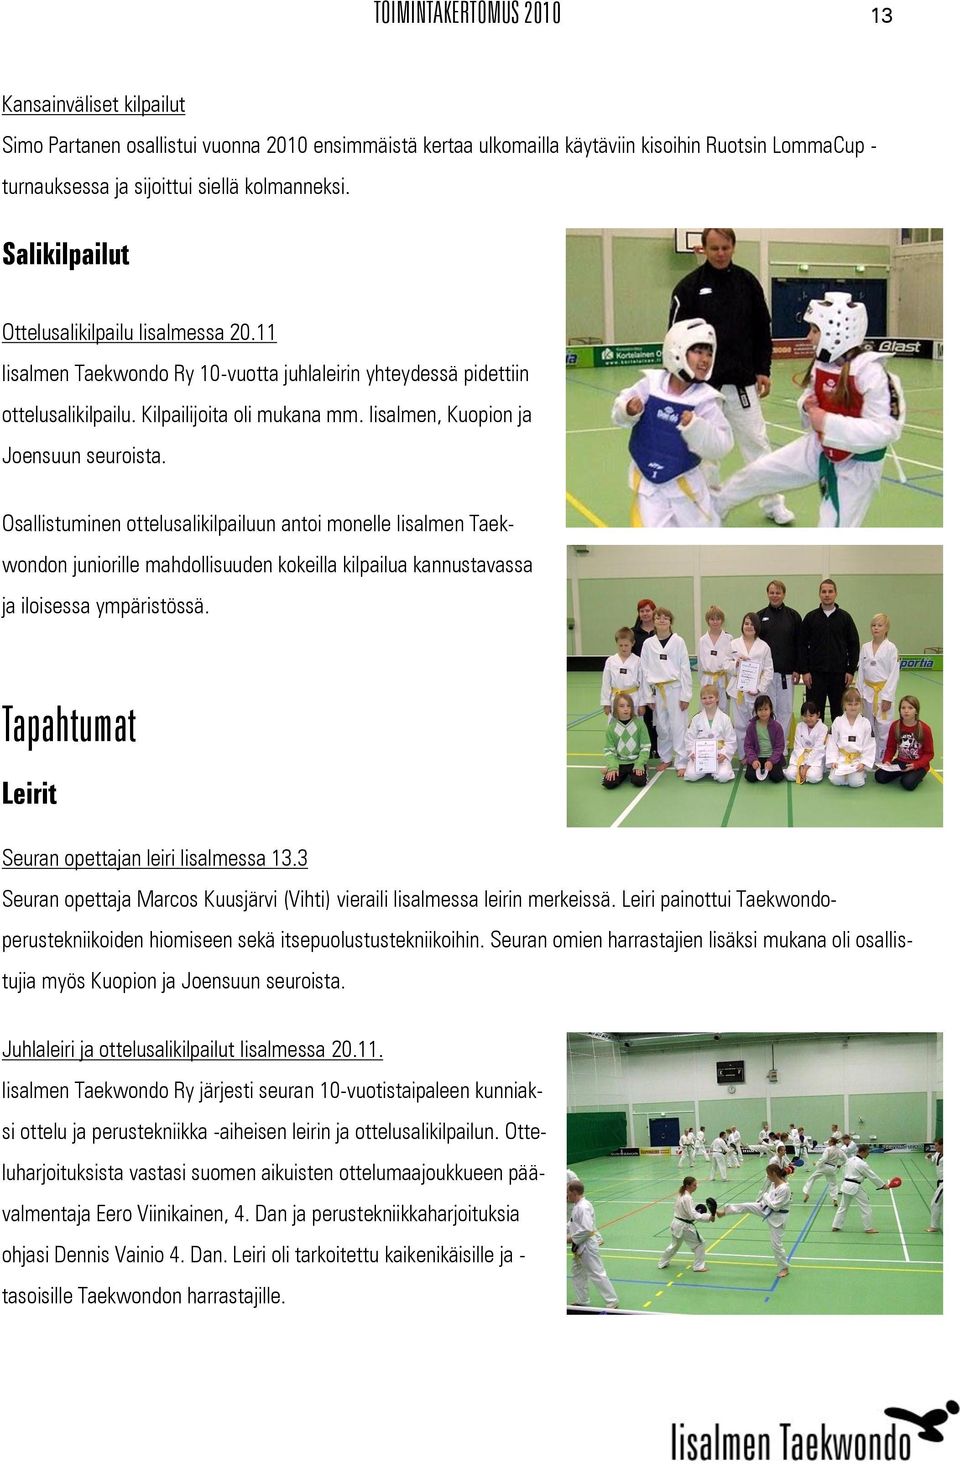 Iisalmen, Kuopion ja Joensuun seuroista. Osallistuminen ottelusalikilpailuun antoi monelle Iisalmen Taekwondon juniorille mahdollisuuden kokeilla kilpailua kannustavassa ja iloisessa ympäristössä.